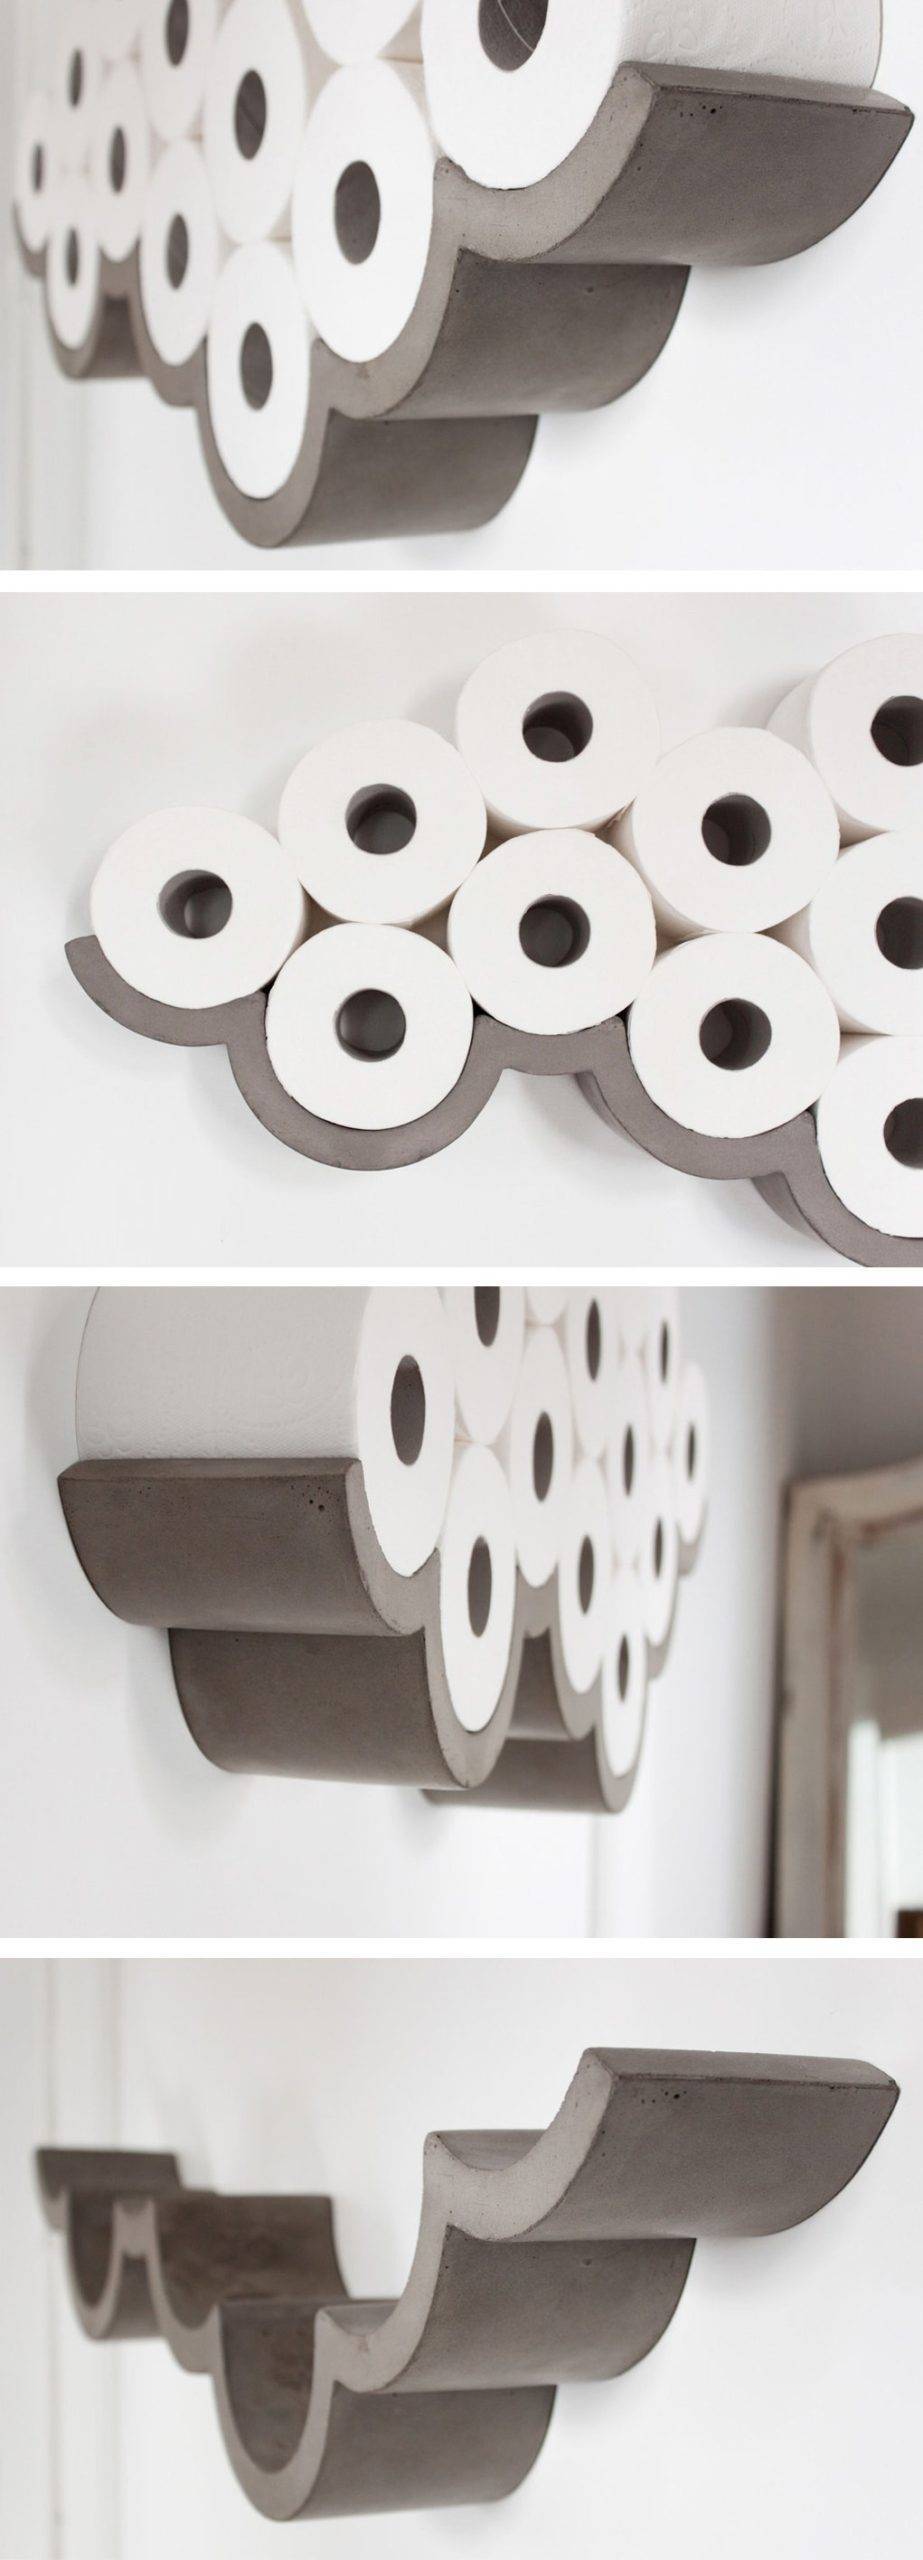 Как хранить туалетную бумагу — 5 креативных идей | креаликум